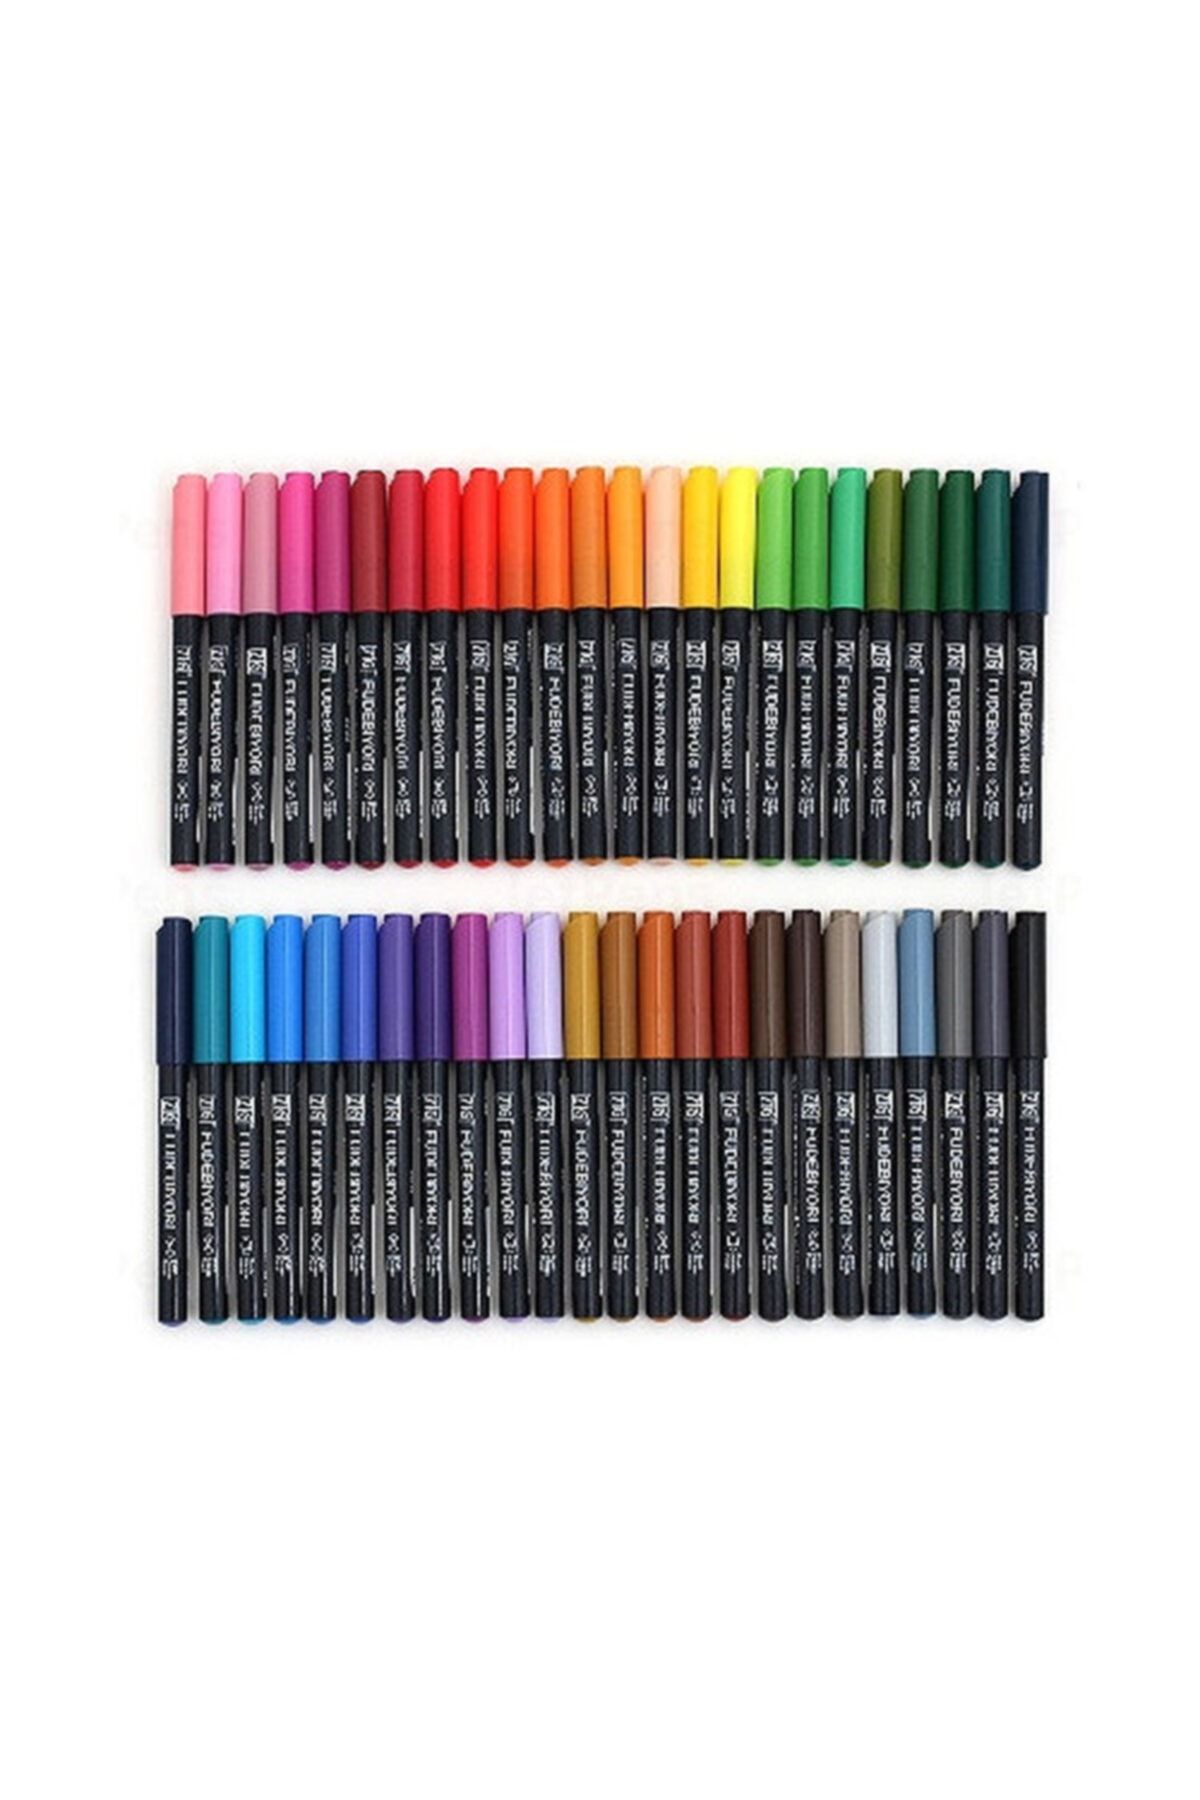 Zig Fudebiyori Brush Pen Fırça Uçlu Kalem 48 Renk Set